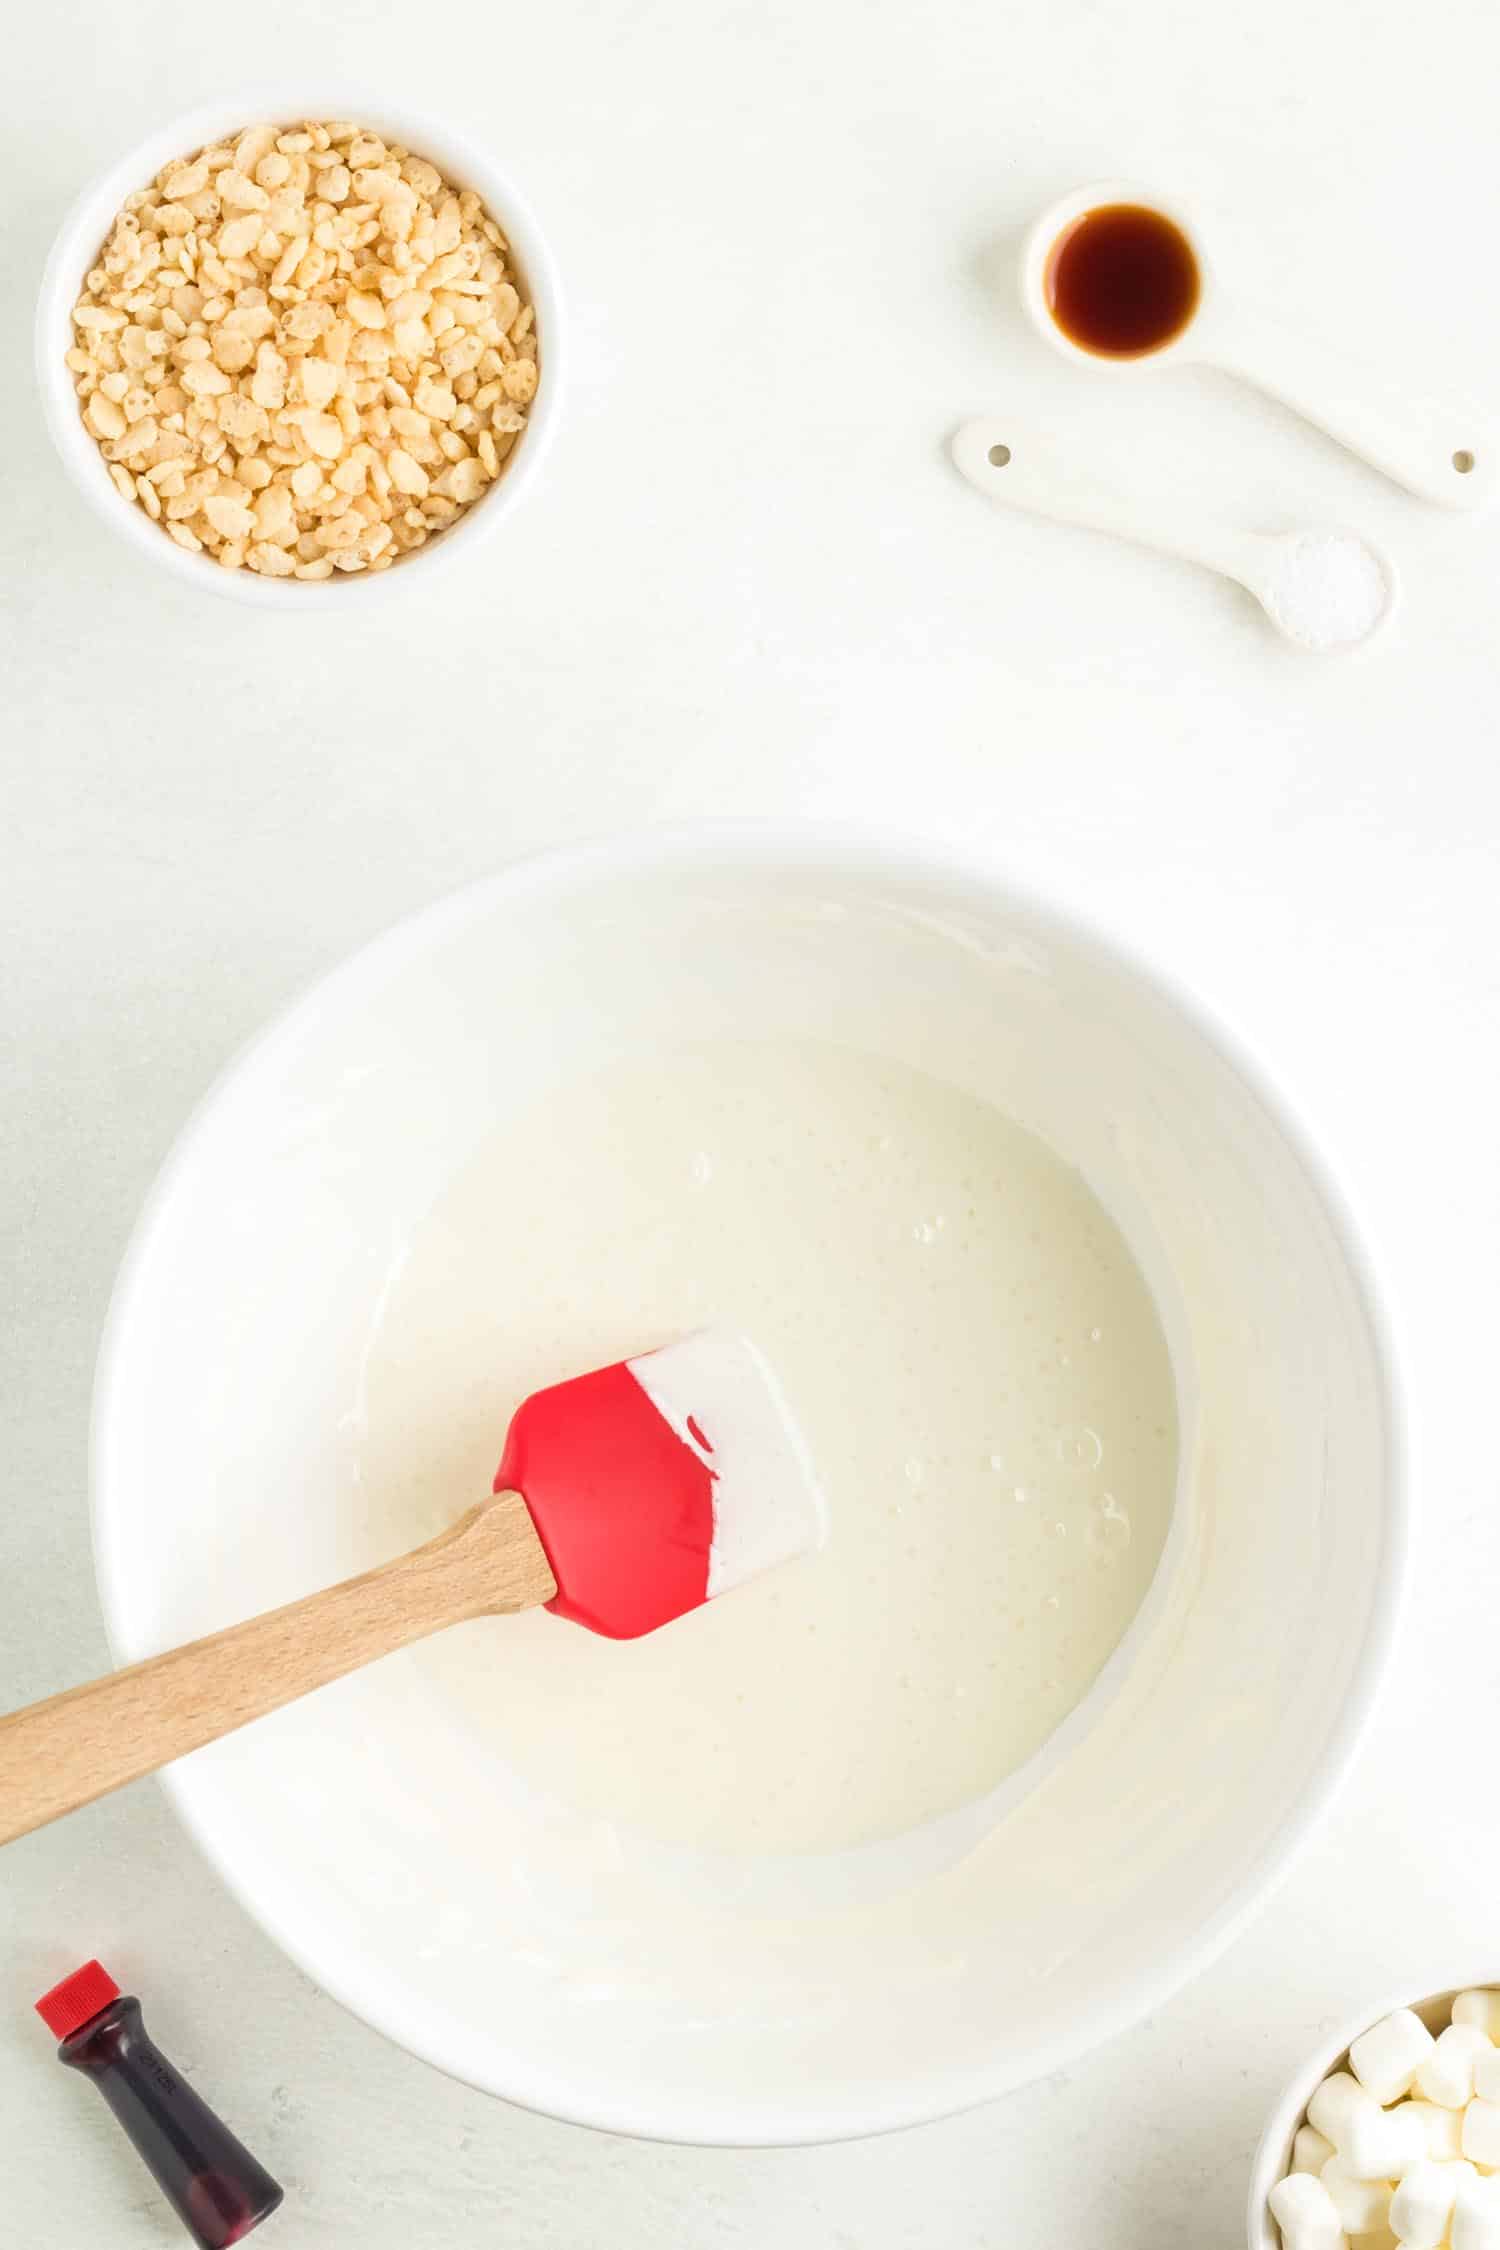 Mixing Santa hat Rice Krispie Treats ingredients